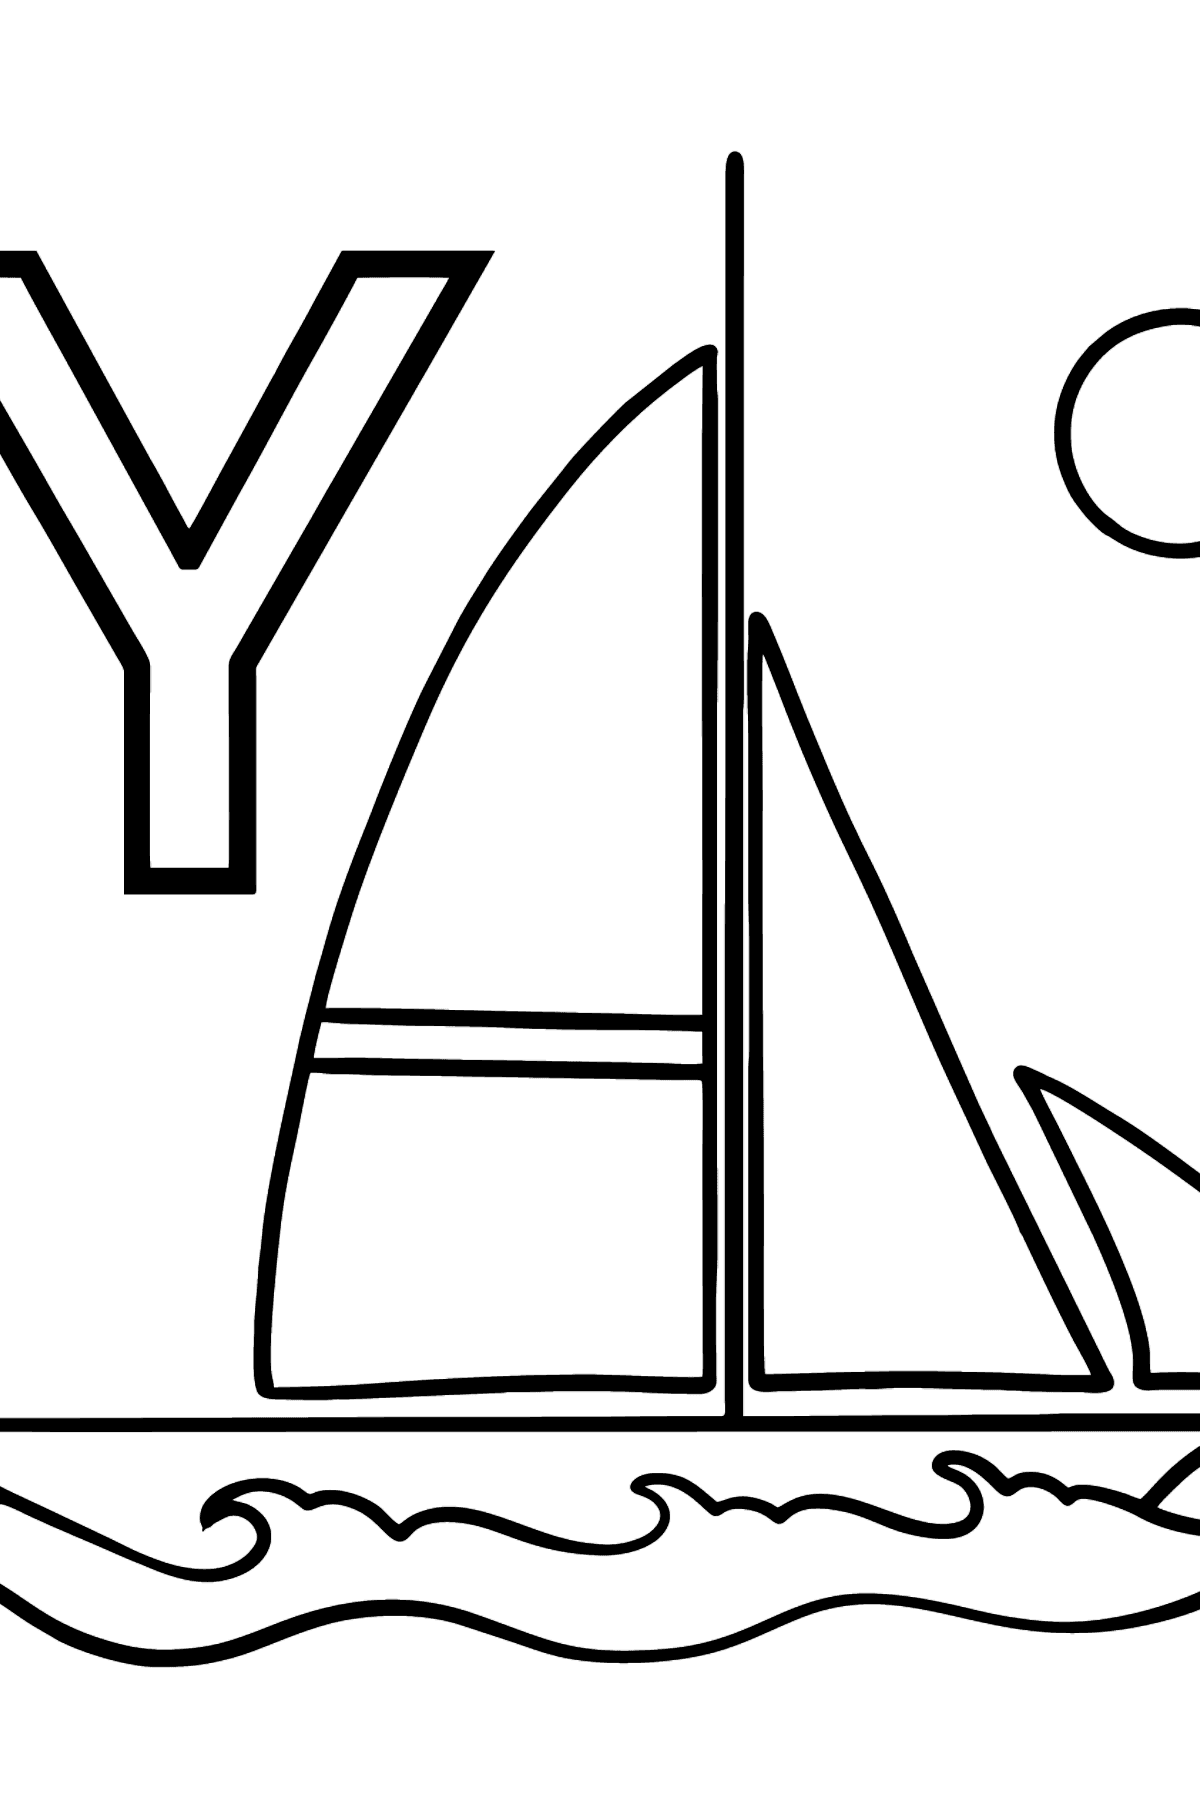 Ausmalbild Englischer Buchstabe Y - YACHT - Malvorlagen für Kinder